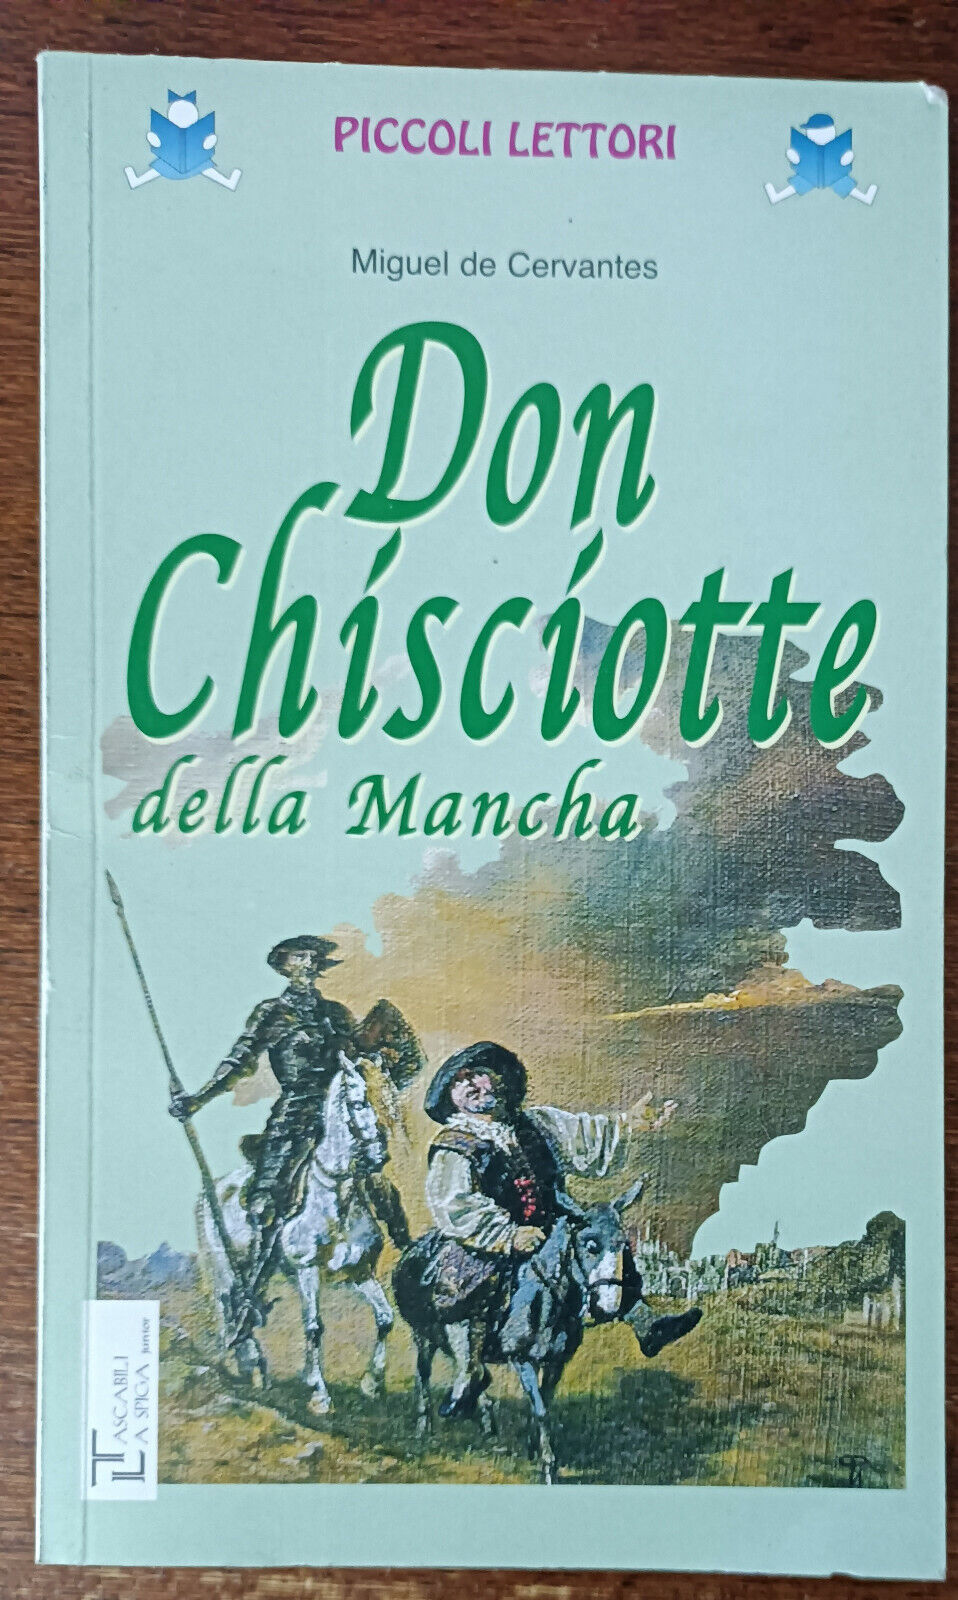 Don Chisciotte della Mancha -  Miguel de Cervantes  - la spiga, 2009 - A